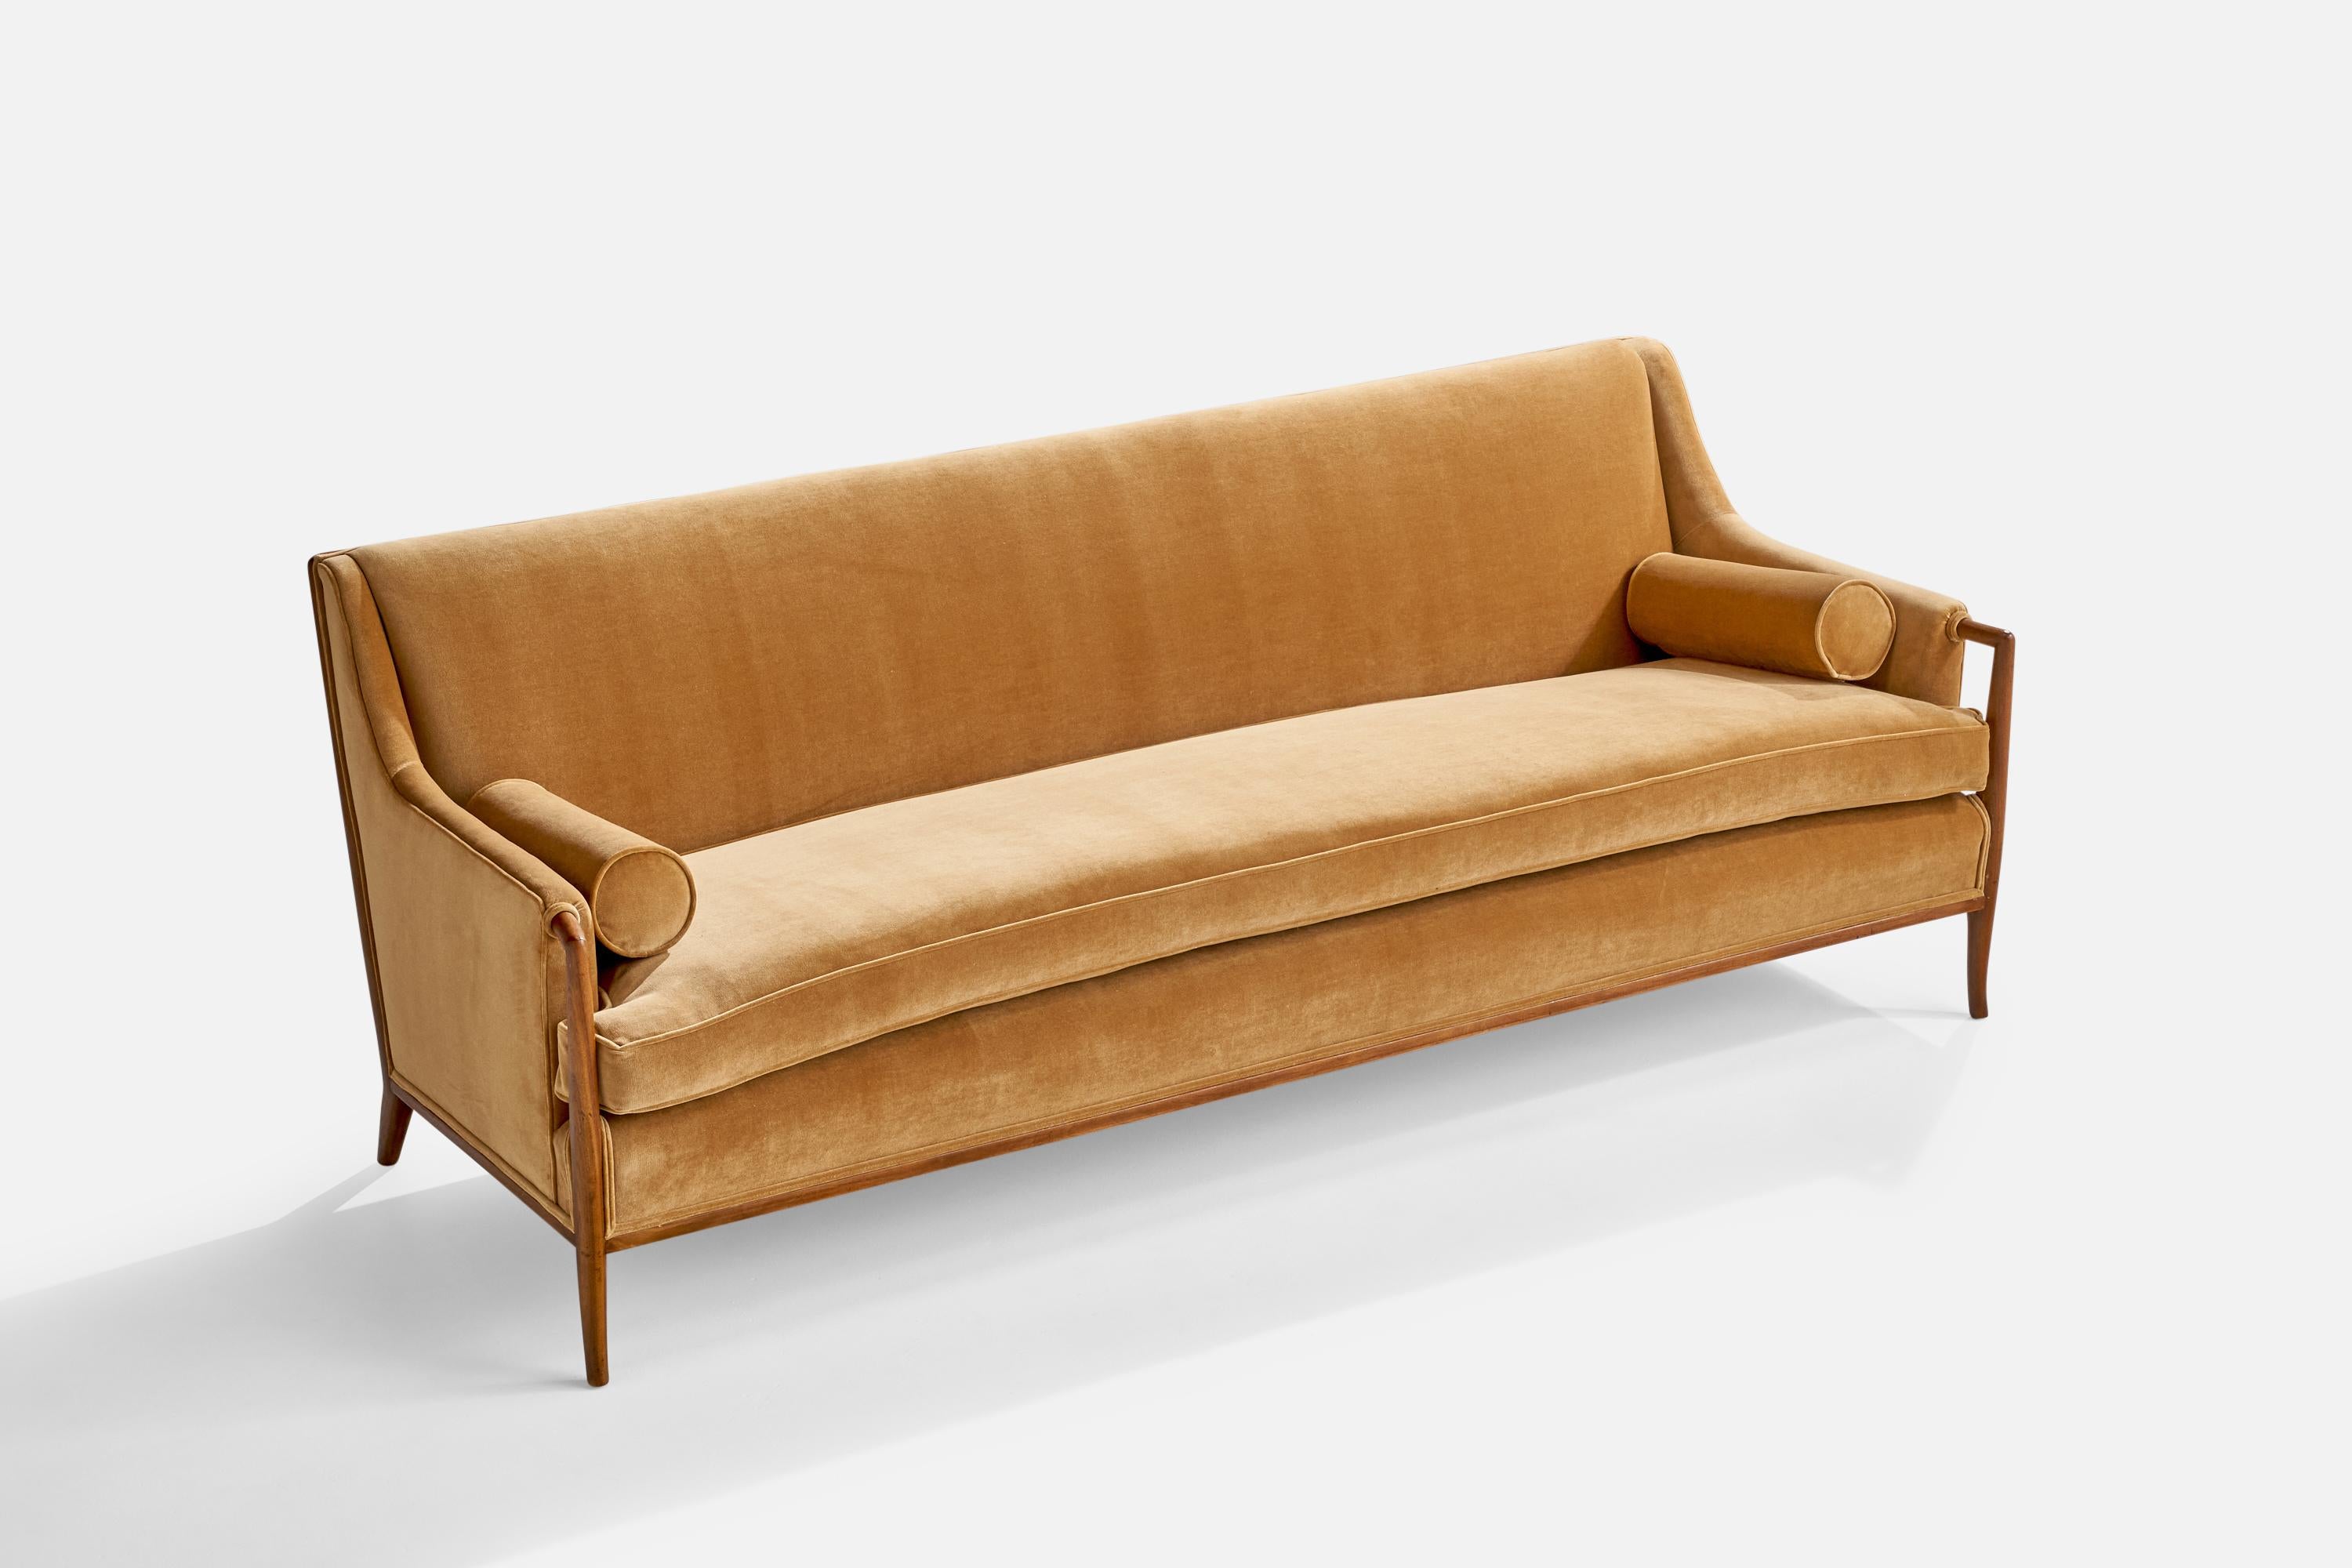 Un canapé en noyer et tissu de velours beige conçu par AT&T. Robsjohn-Gibbings et produit par Widdicomb Furniture Company, Grand Rapids, Michigan, États-Unis, années 1950.

Hauteur du siège 19.5